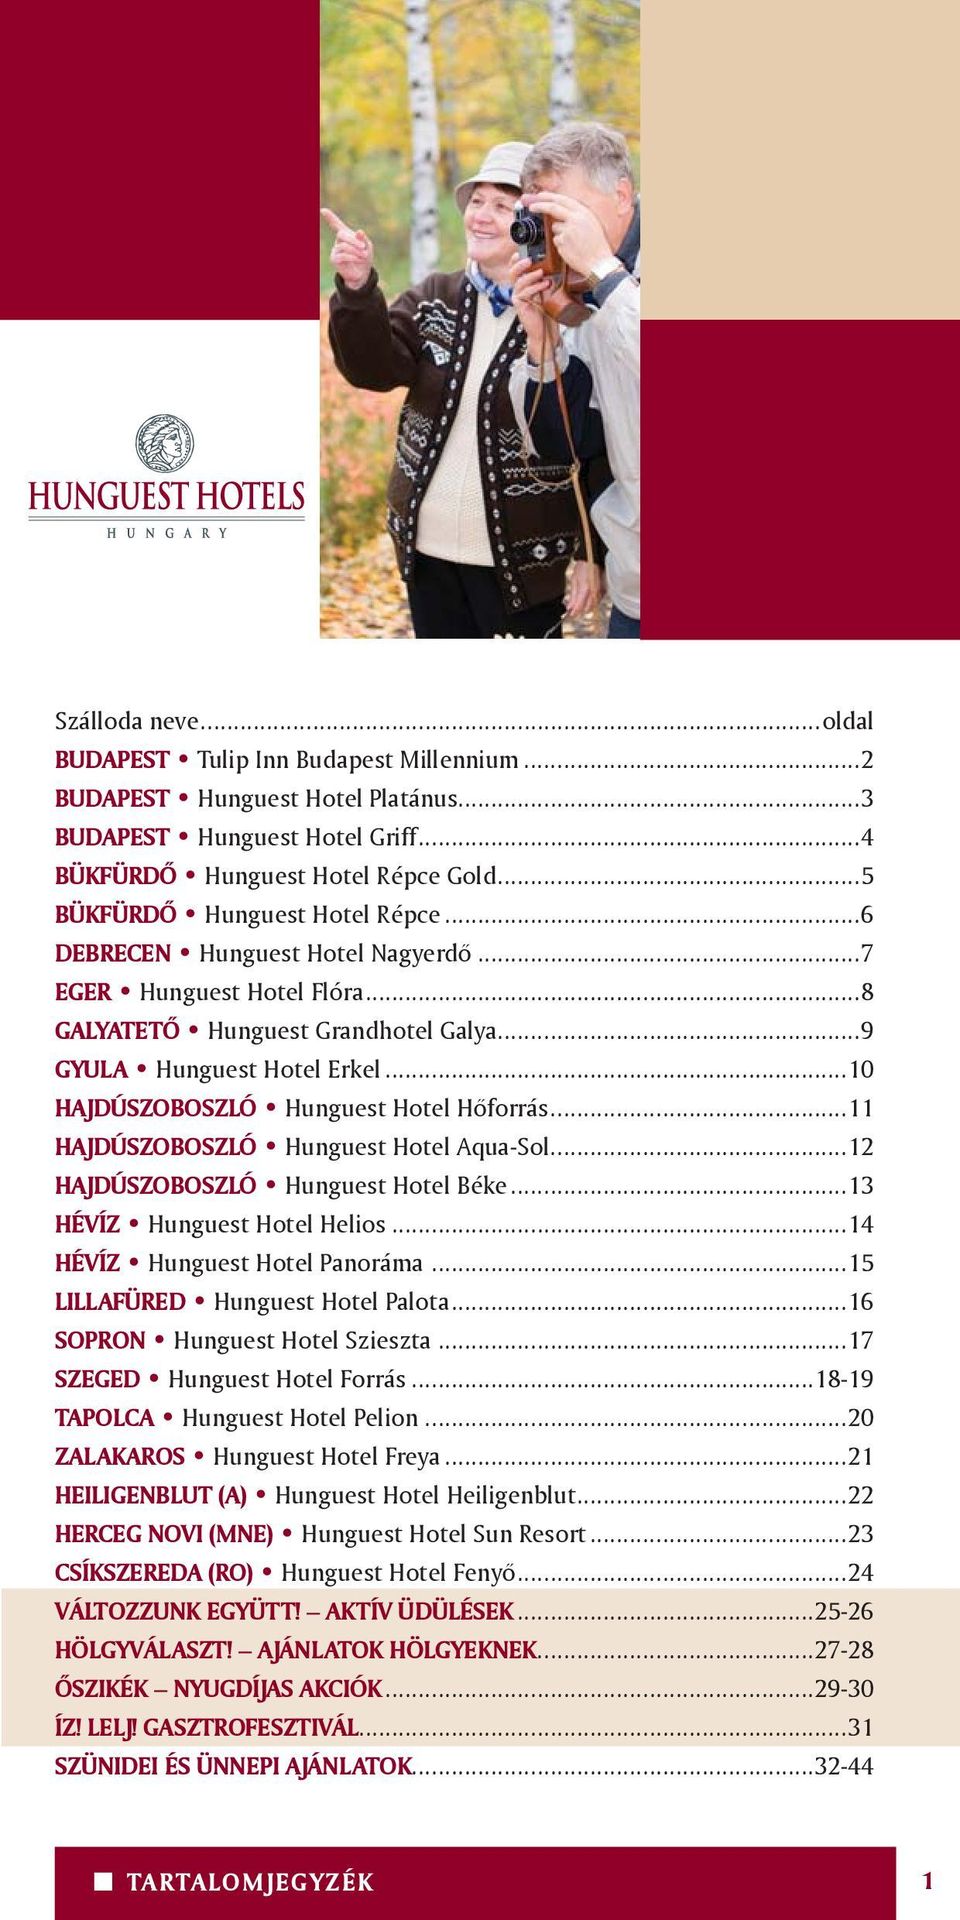 ..10 HAJDÚSZOBOSZLÓ Hunguest Hotel Hôforrás...11 HAJDÚSZOBOSZLÓ Hunguest Hotel Aqua-Sol...12 HAJDÚSZOBOSZLÓ Hunguest Hotel Béke...13 HÉVÍZ Hunguest Hotel Helios...14 HÉVÍZ Hunguest Hotel Panoráma.